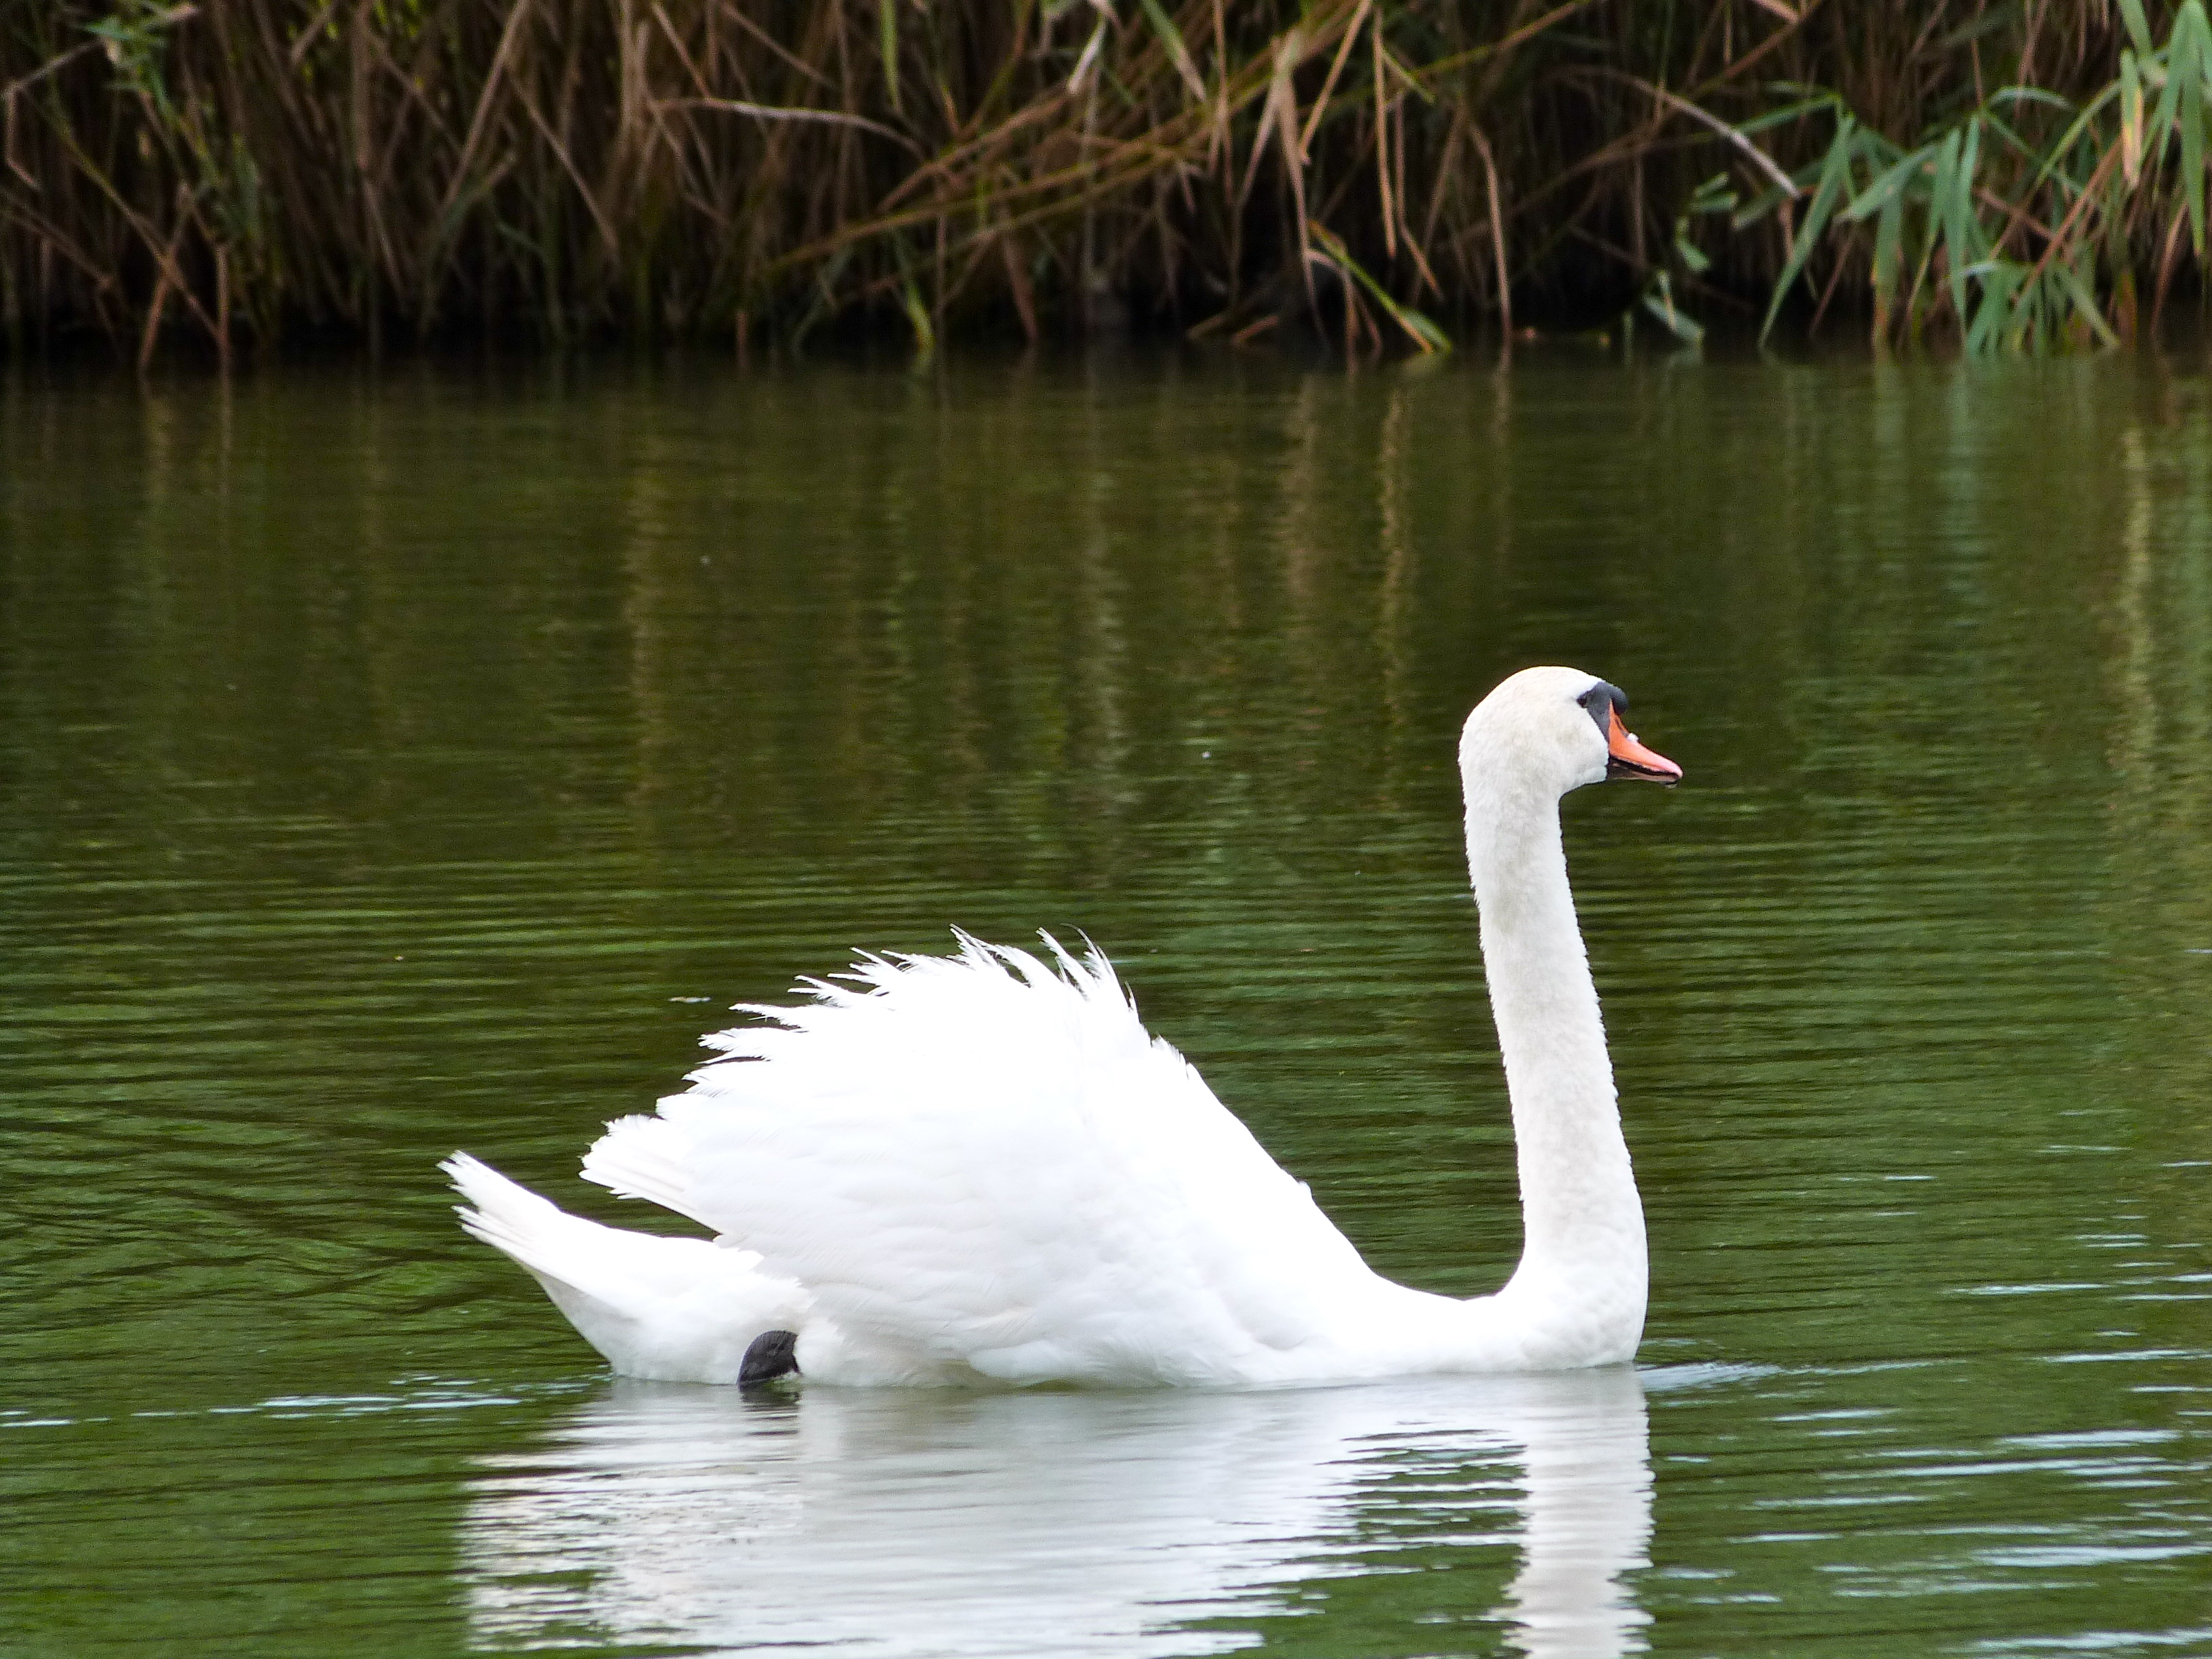 Swans at the lake photo